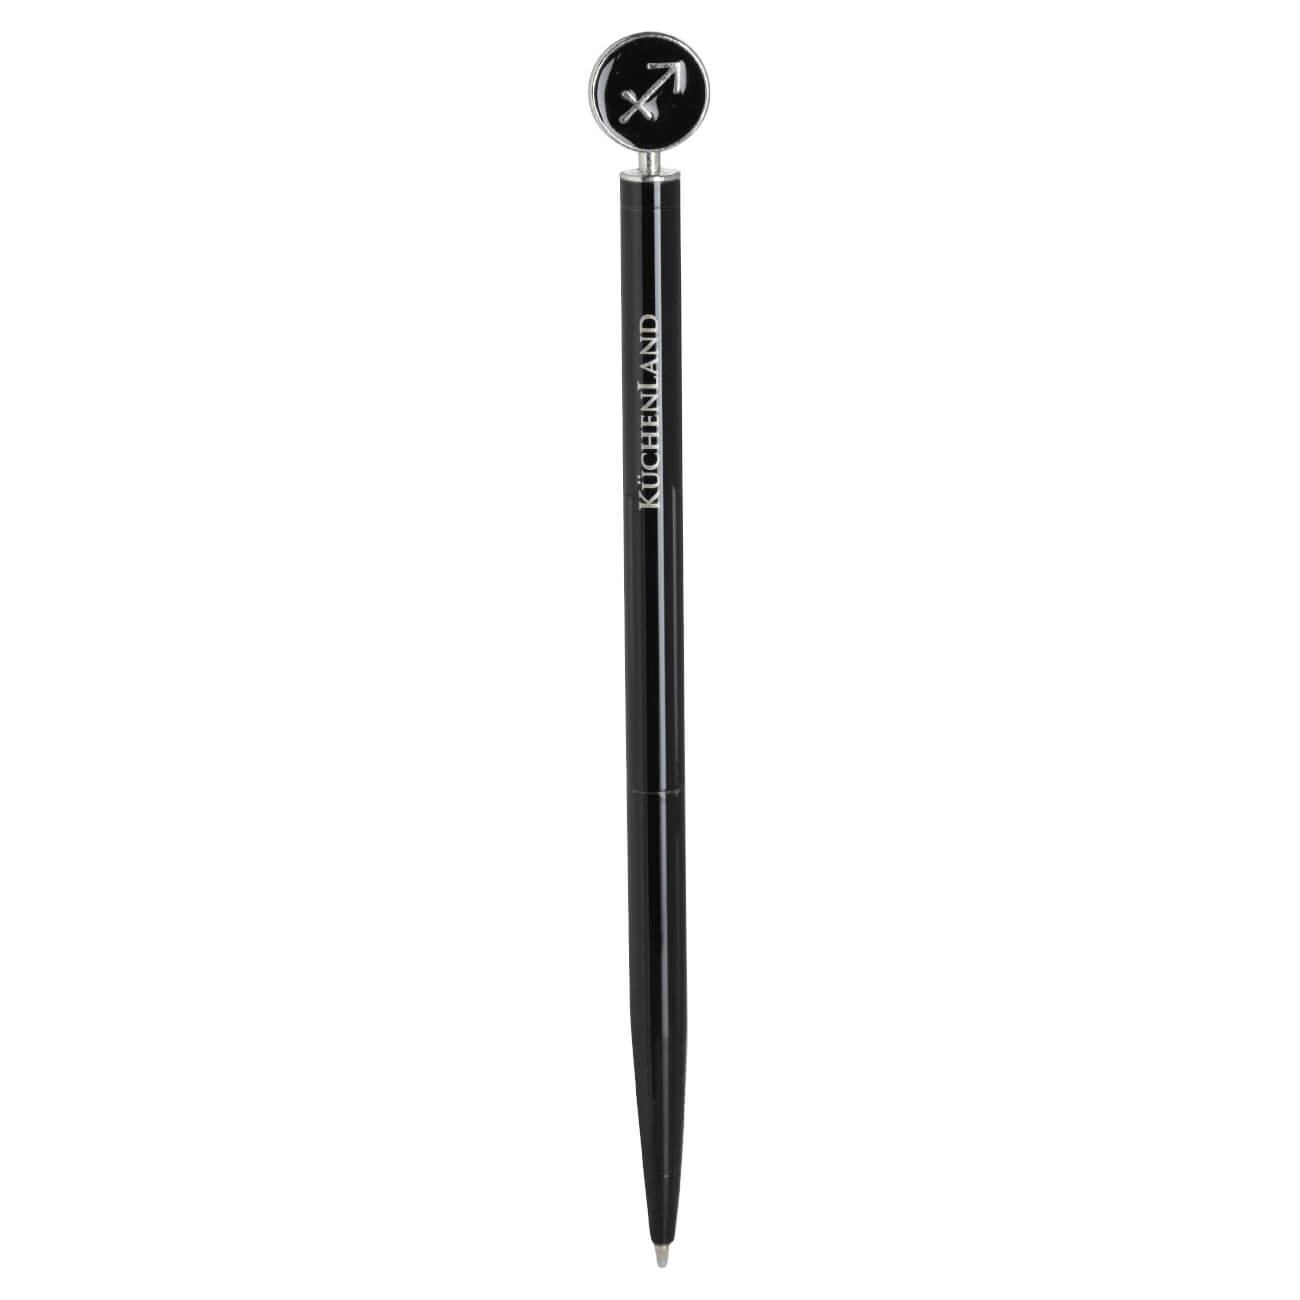 Ручка шариковая, 15 см, с фигуркой, сталь, черно-серебристая, Стрелец, Zodiac ручка на открытке с бумажным блоком the best teacher